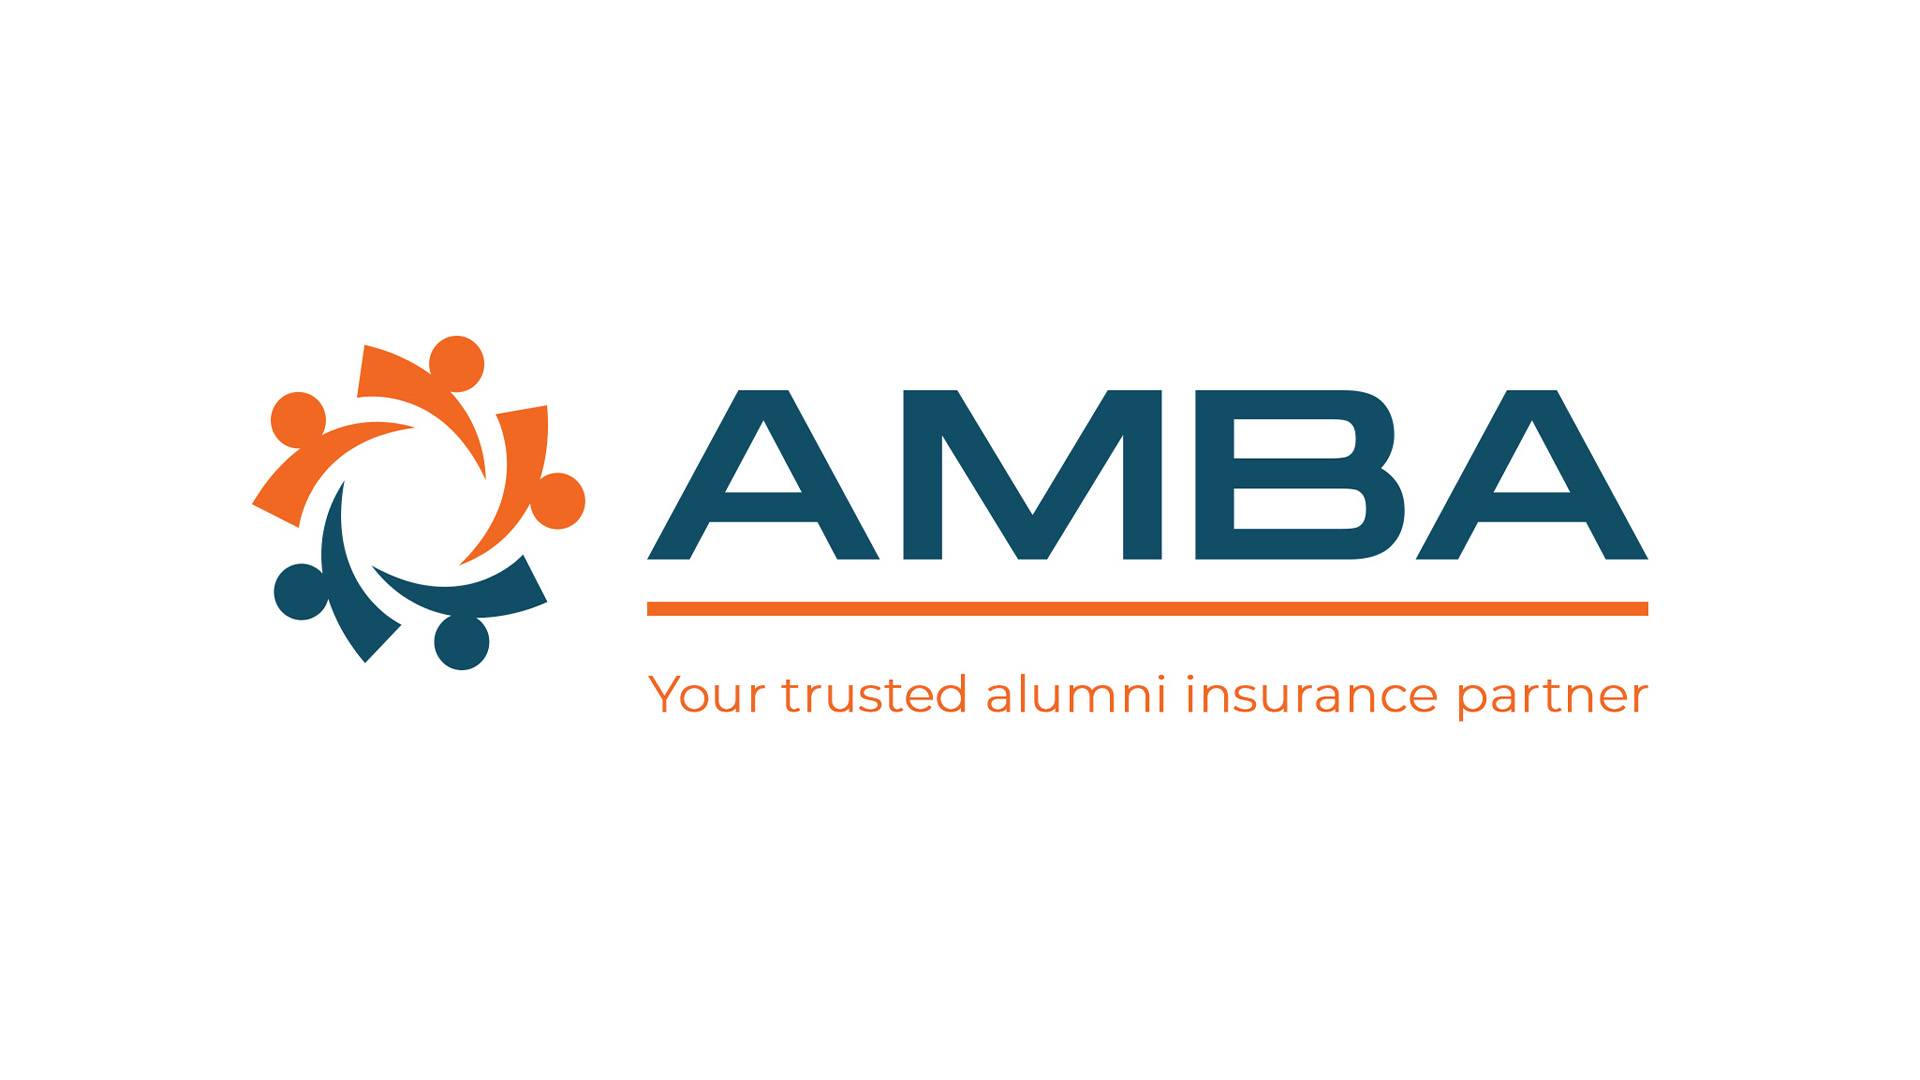 AMBA Logo, "Your trusted alumni insurance partner" underneath.